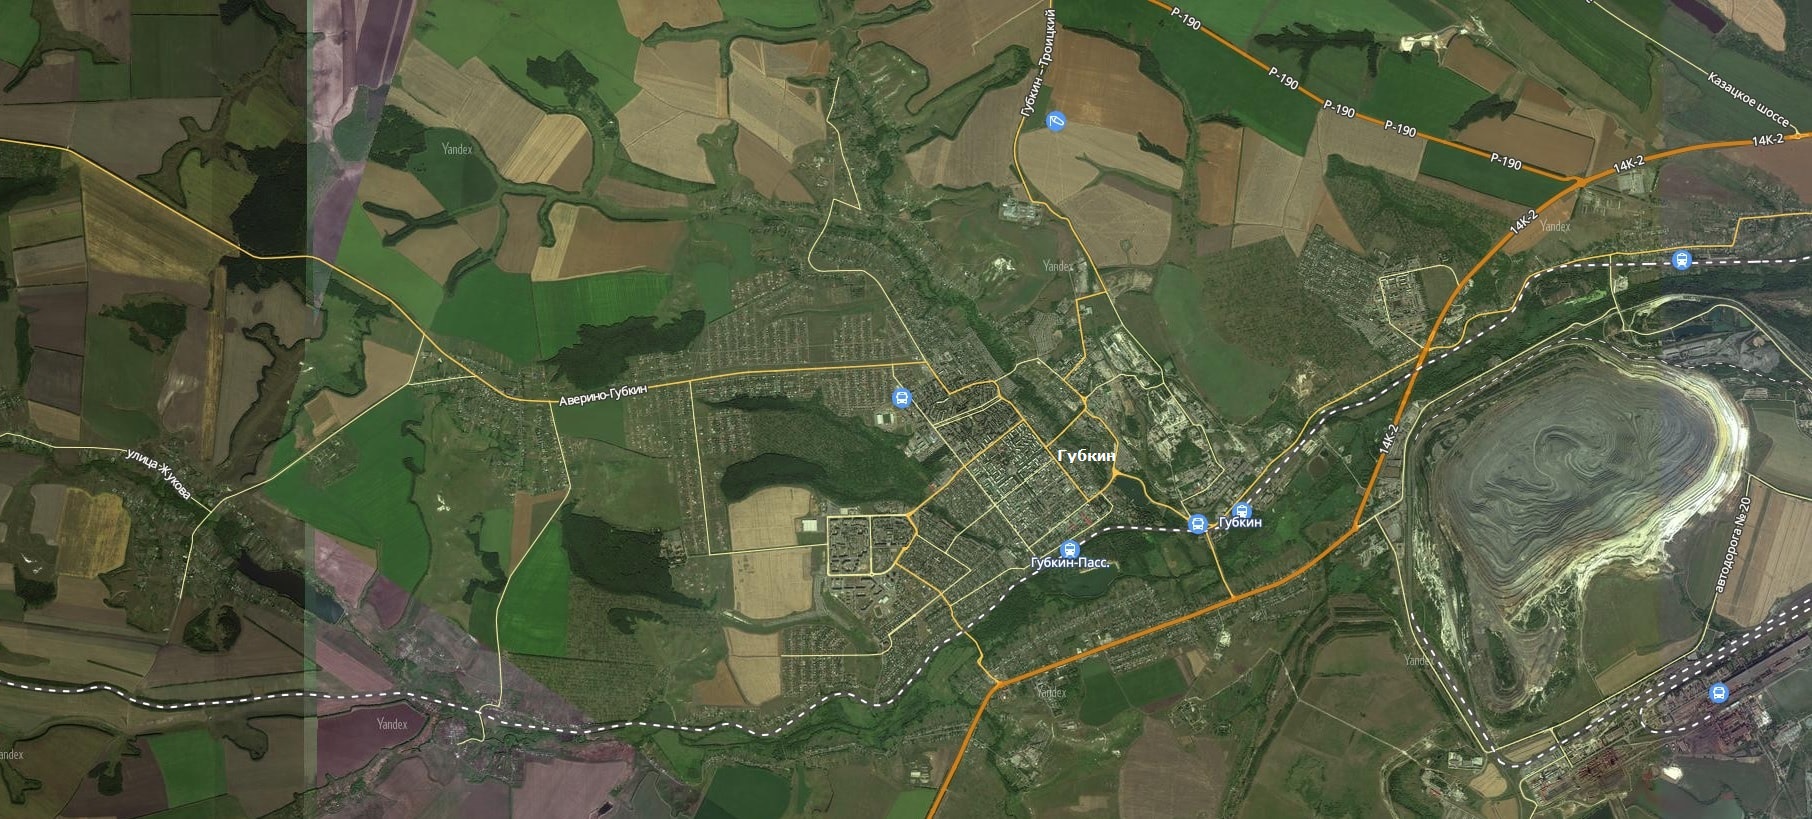 Карта вятские поляны с улицами и домами со спутника в реальном времени